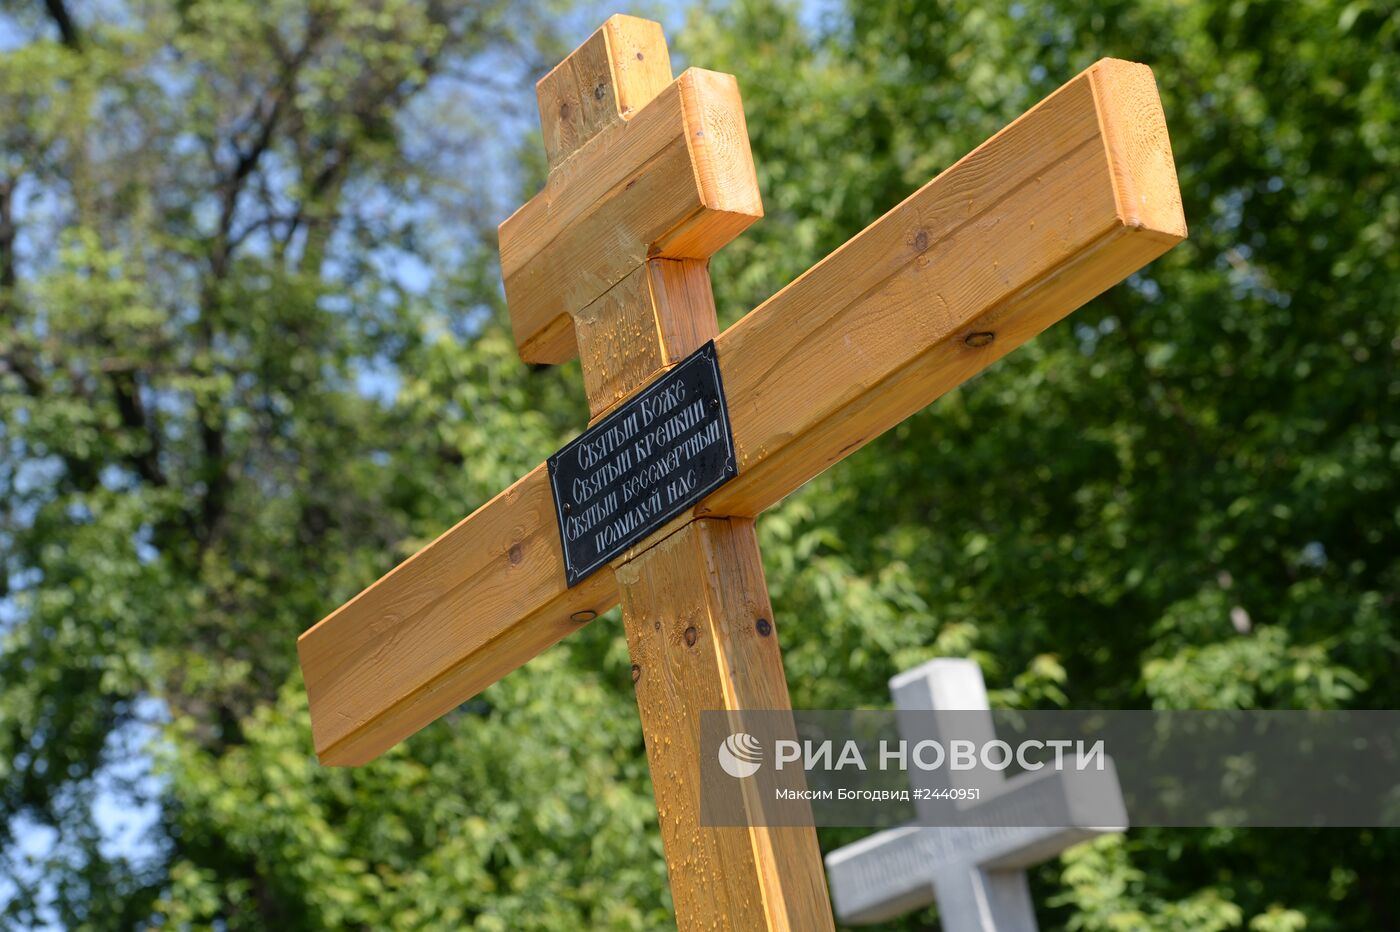 Установка поминального креста в память о погибших на территории Украины